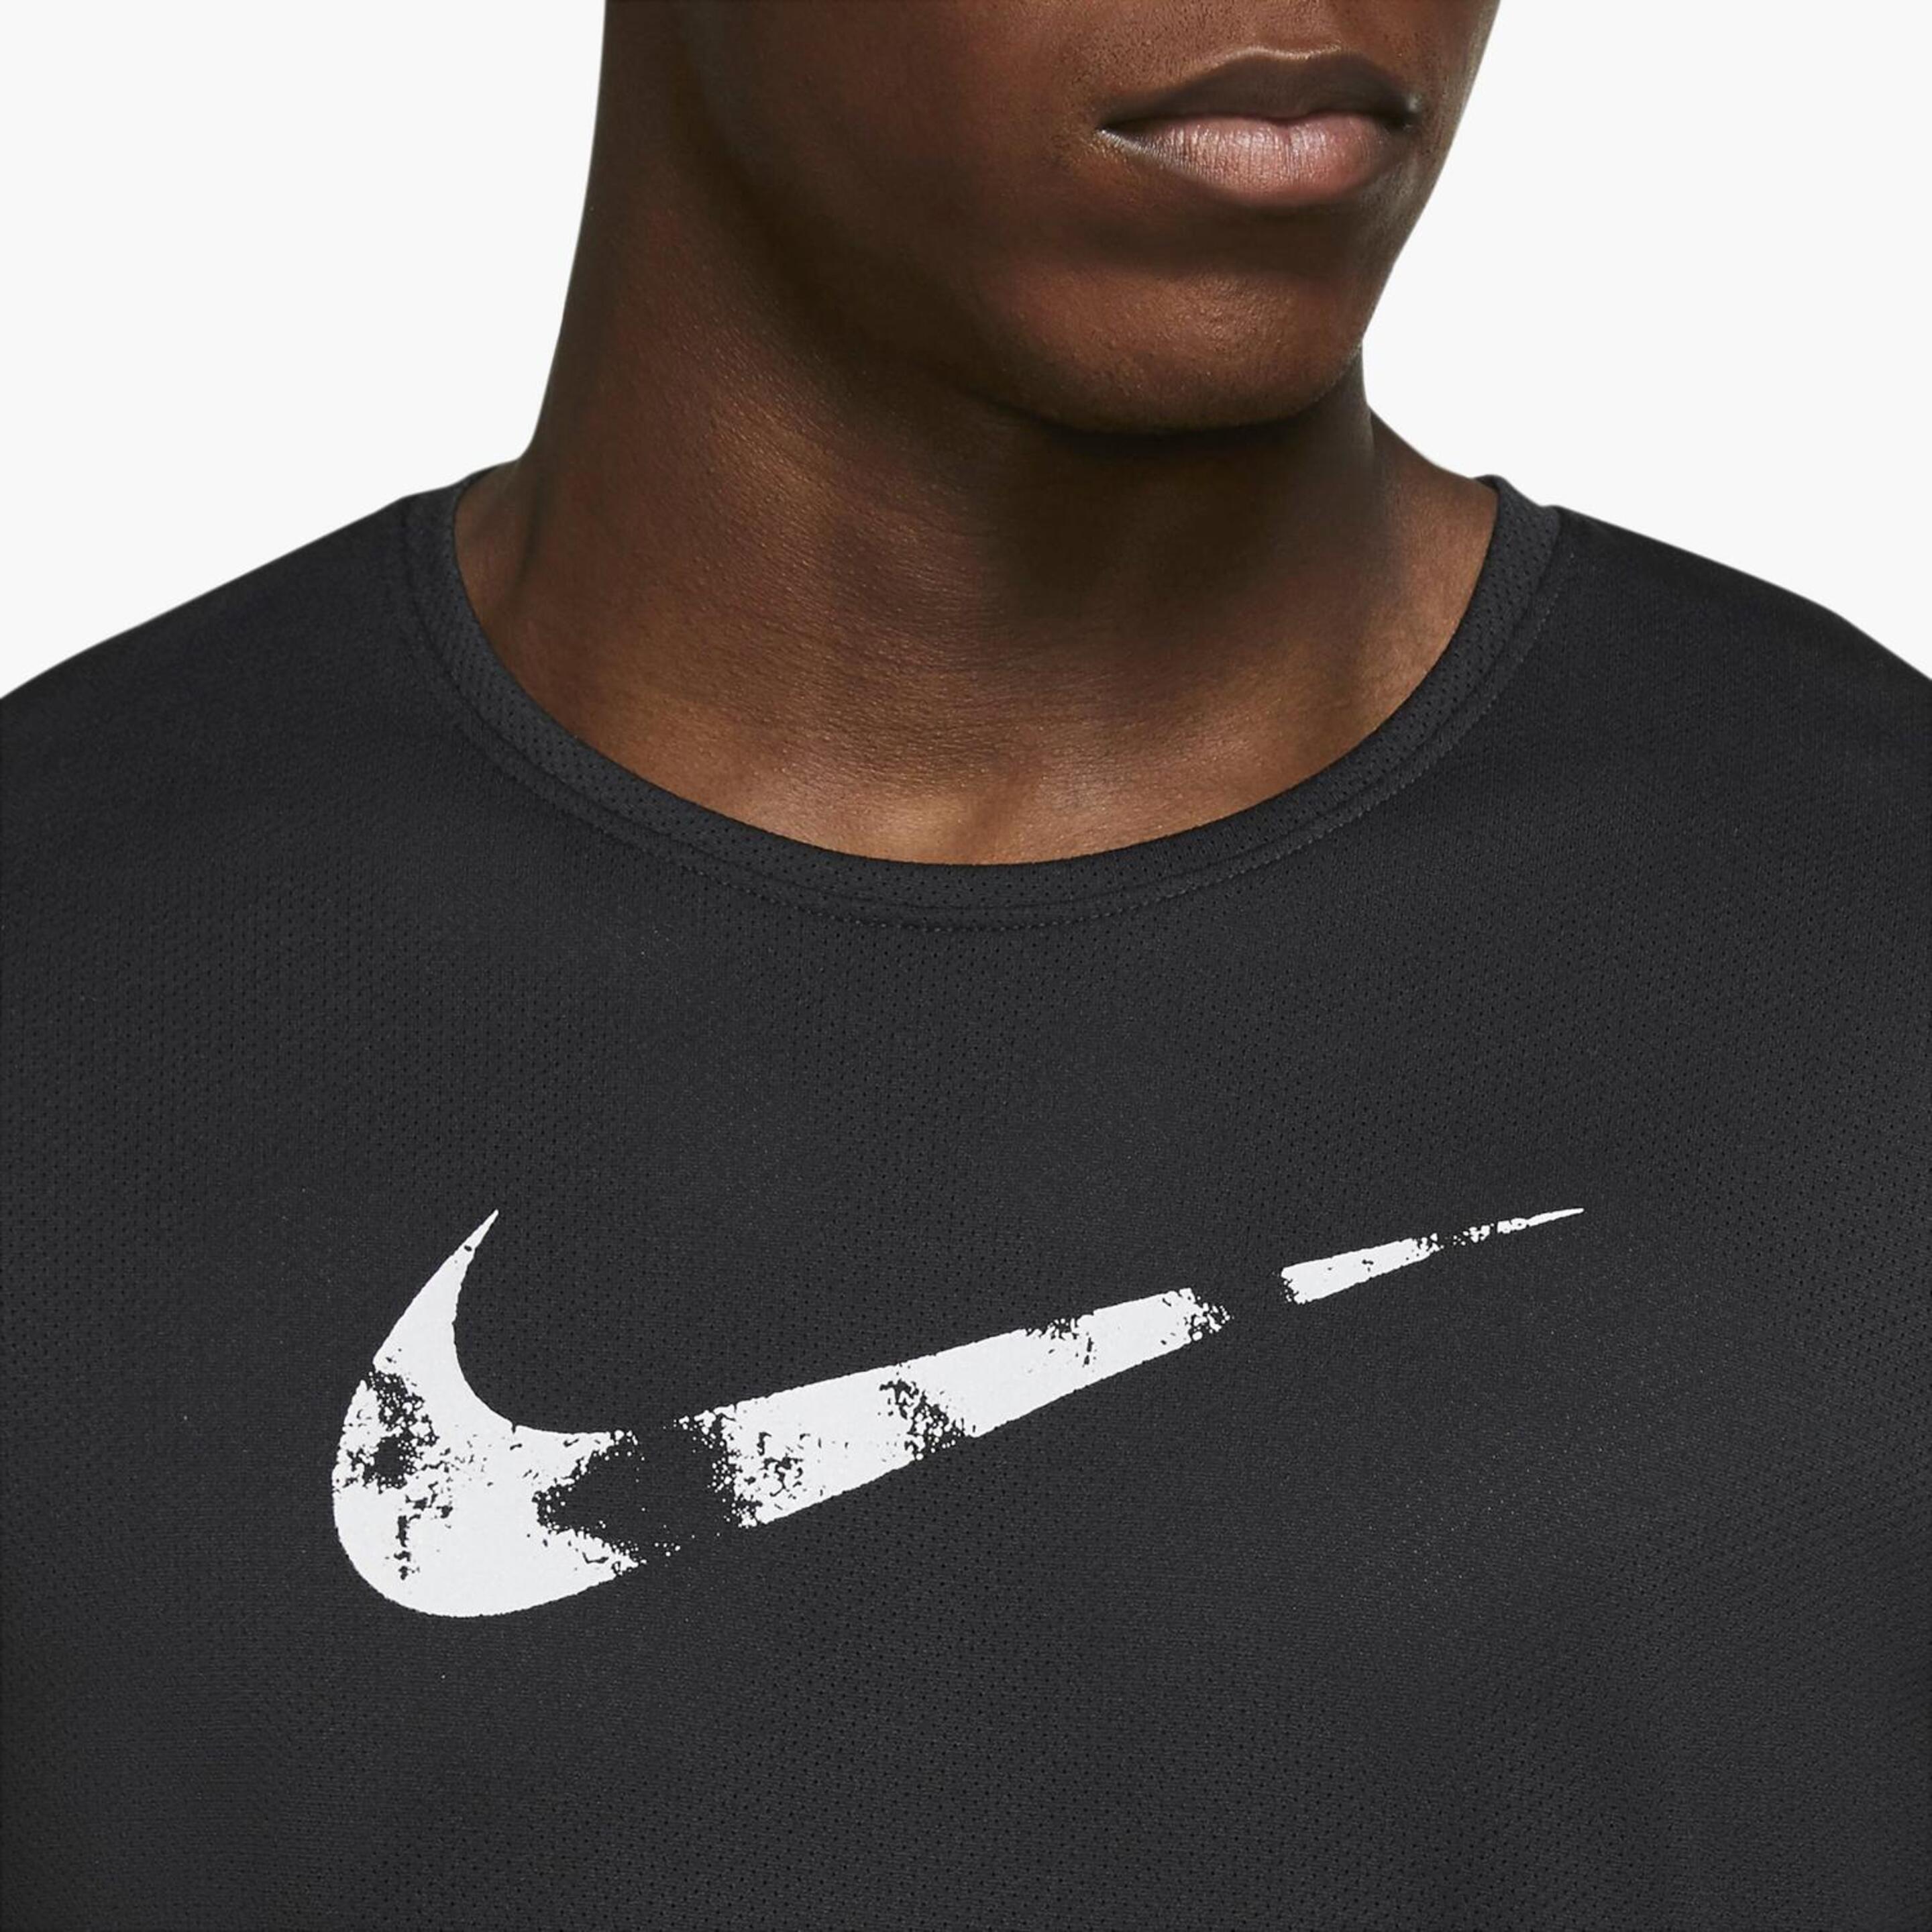 T-shirt Nike Dri-fit Wild Run